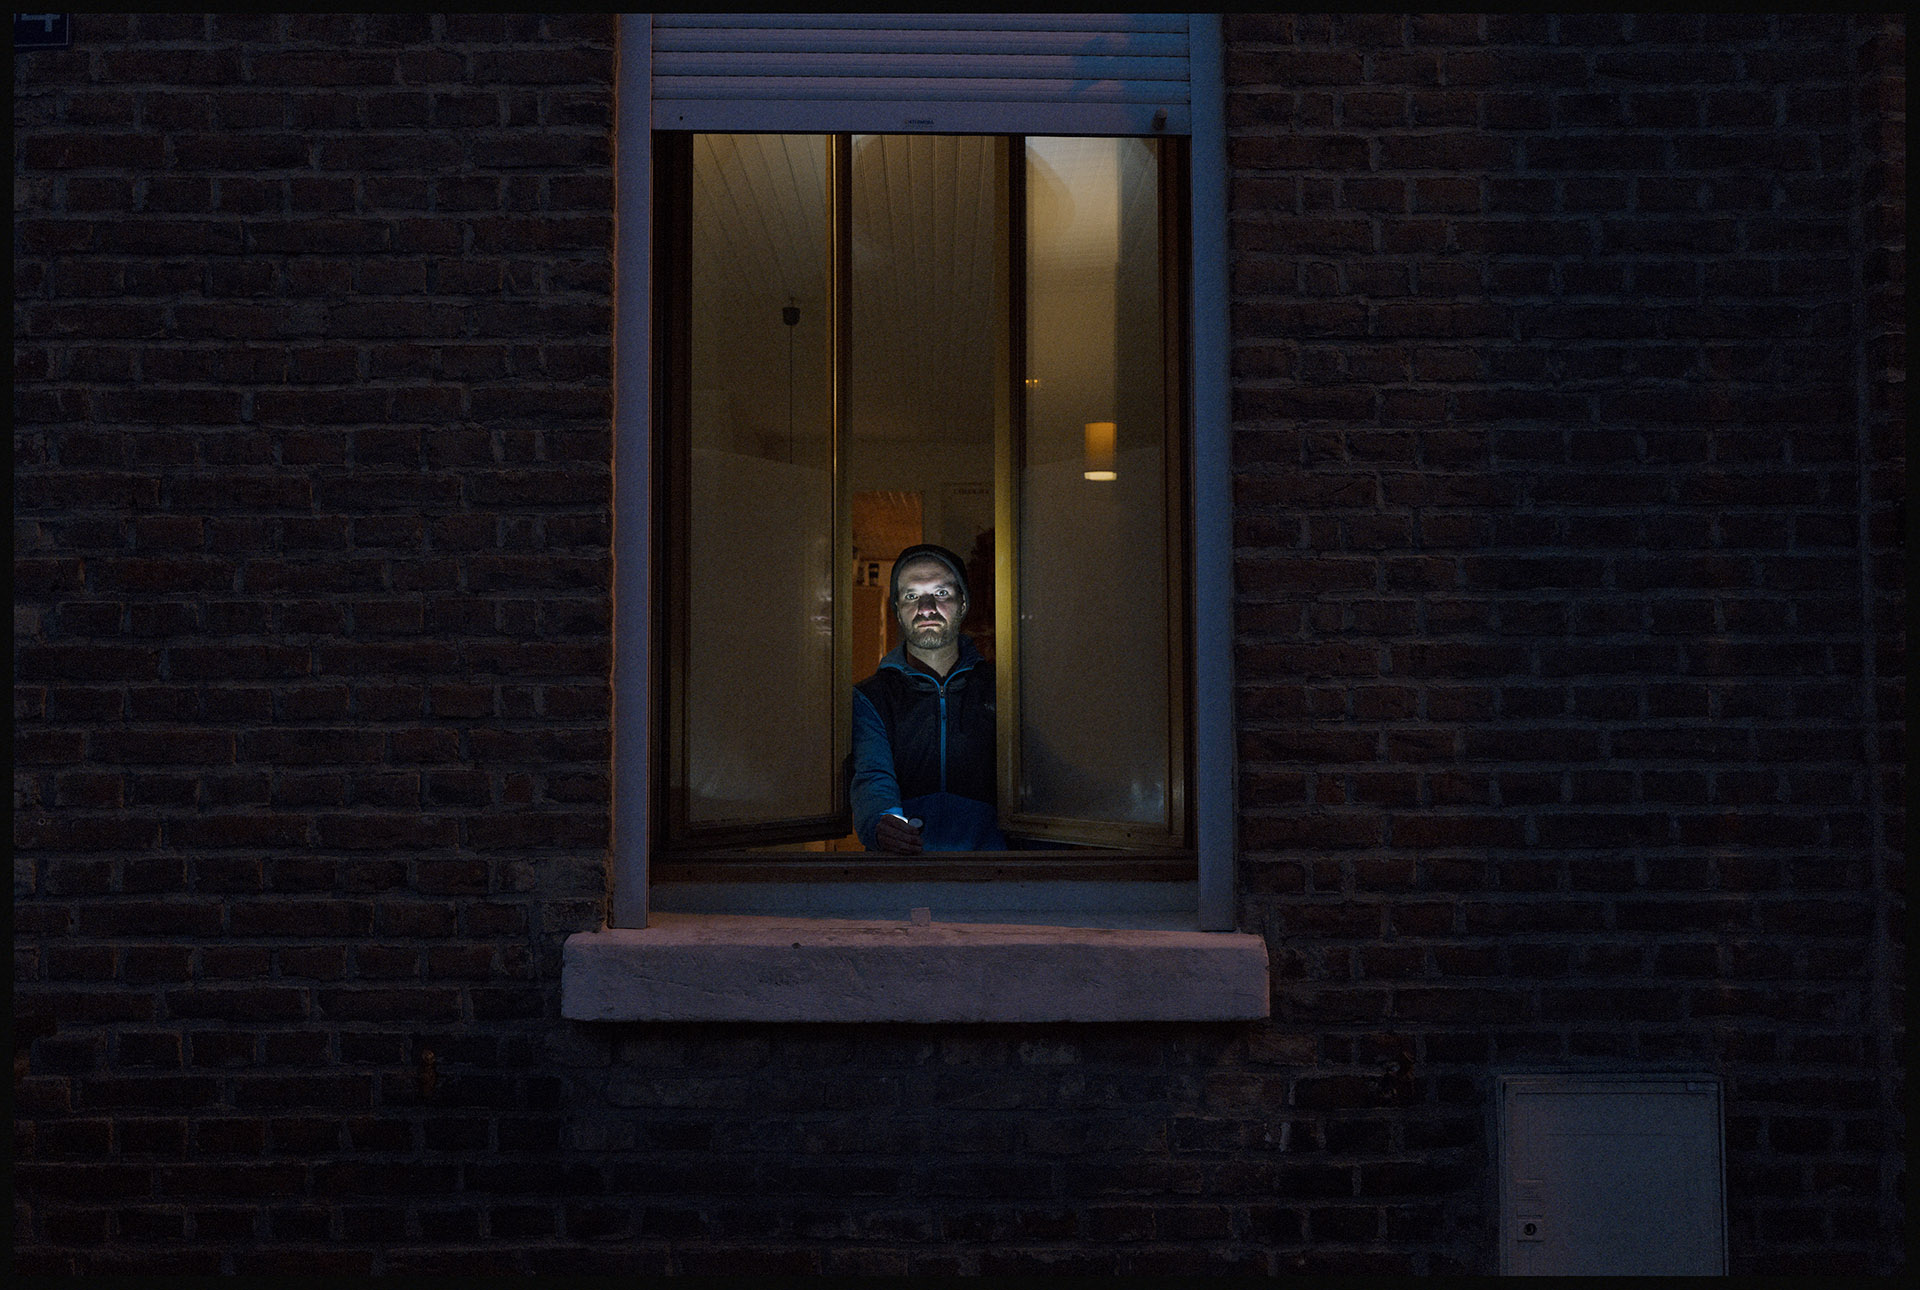 Durant la période de confinement, image d'un homme dans la nuit à la fenêtre de sa maison par Ludovic Leleu